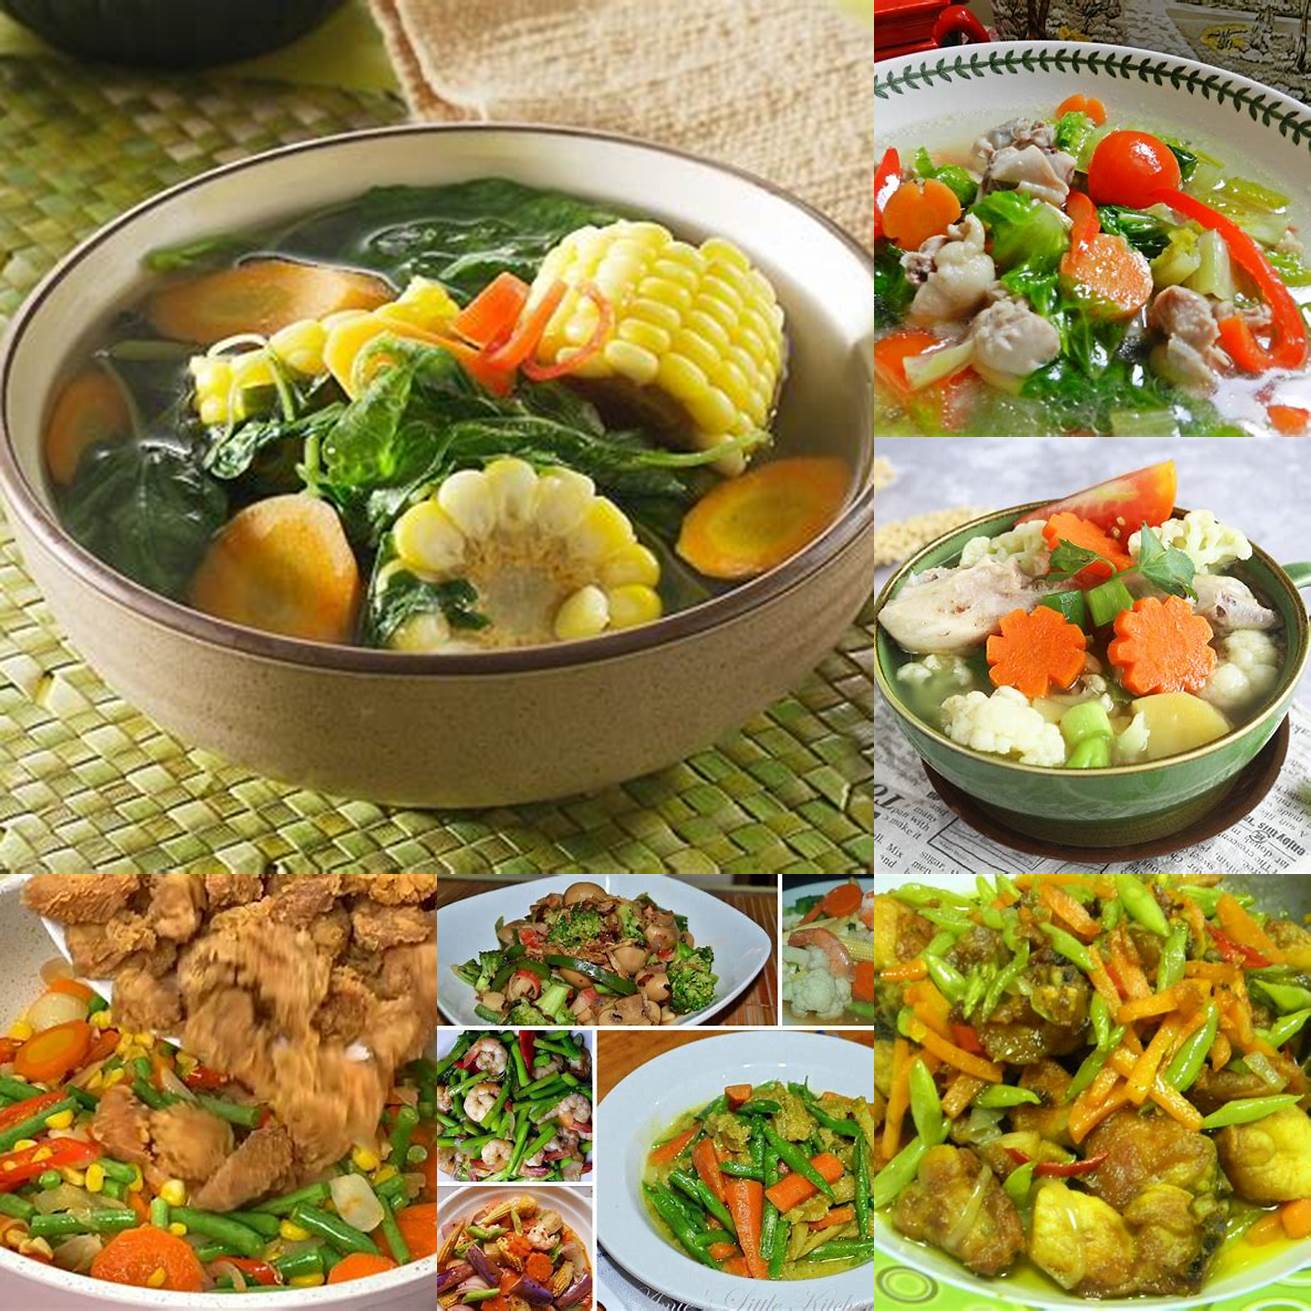 Masak hingga sayur-sayuran dan daging ayam atau ikan empuk